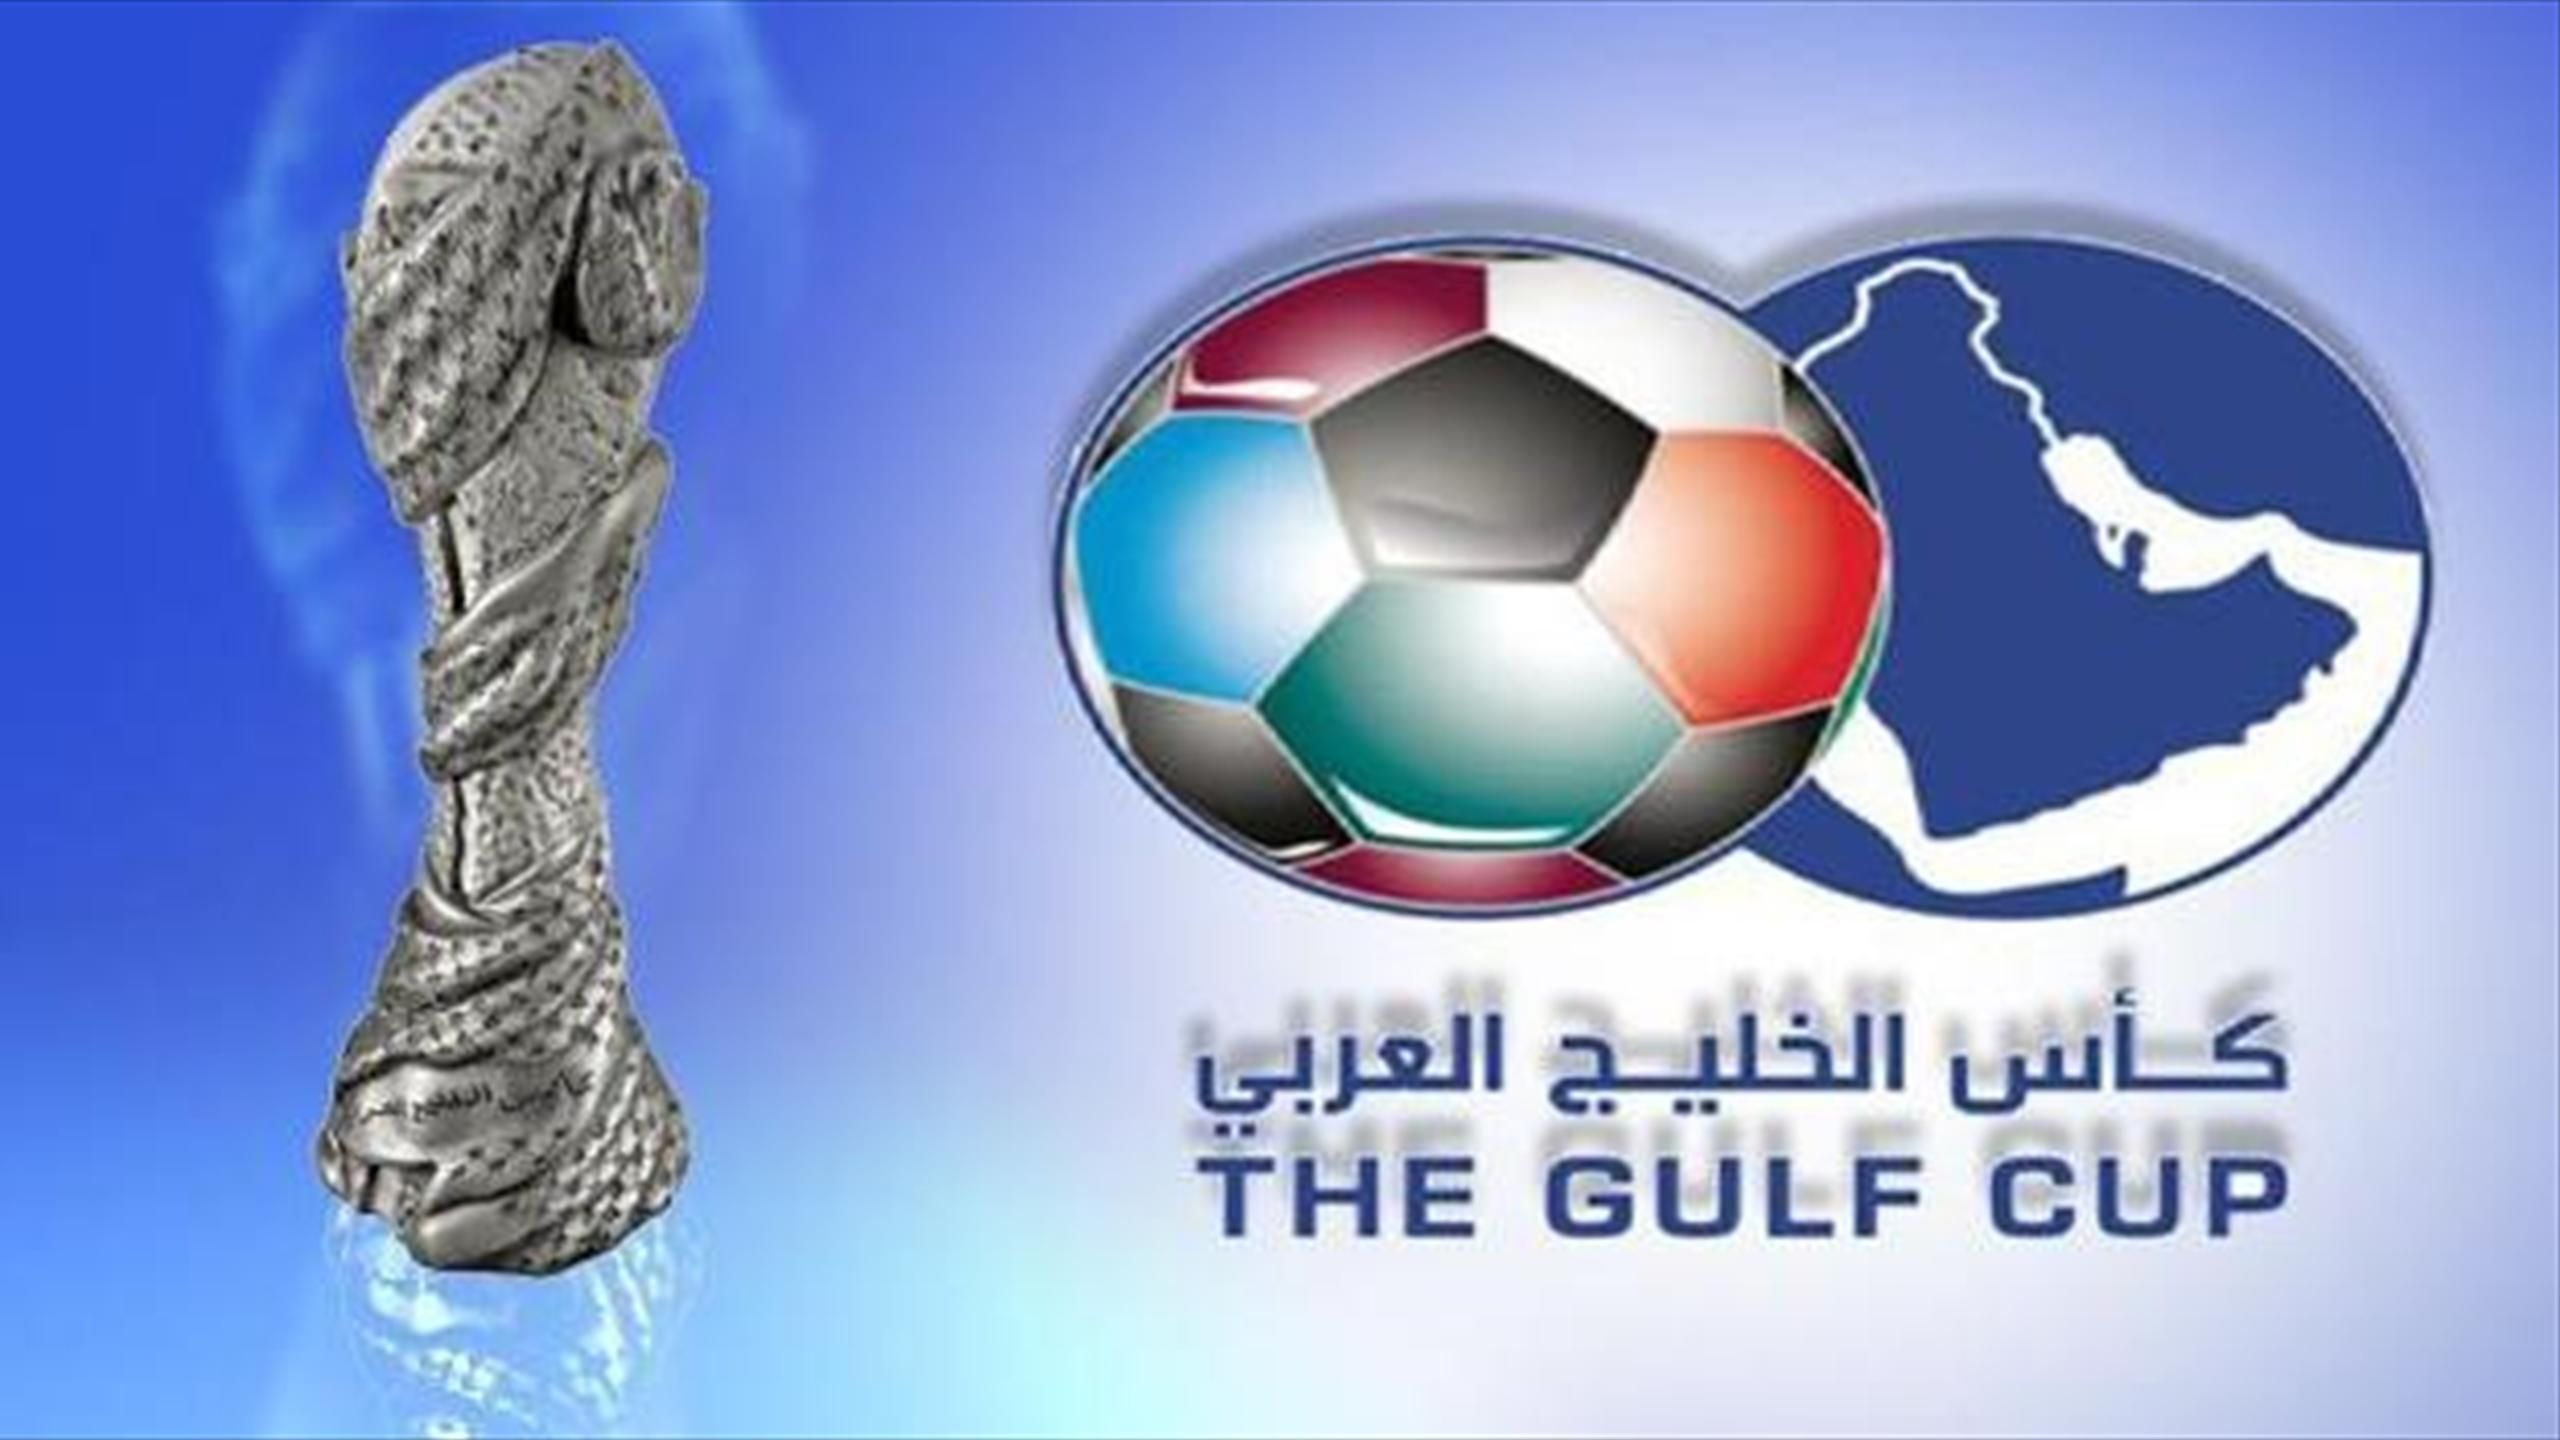 الاتحاد الخليجي يوجه دعوة للاتحادات الكروية لحضور القرعة يوم ٢٥ سبتمبر